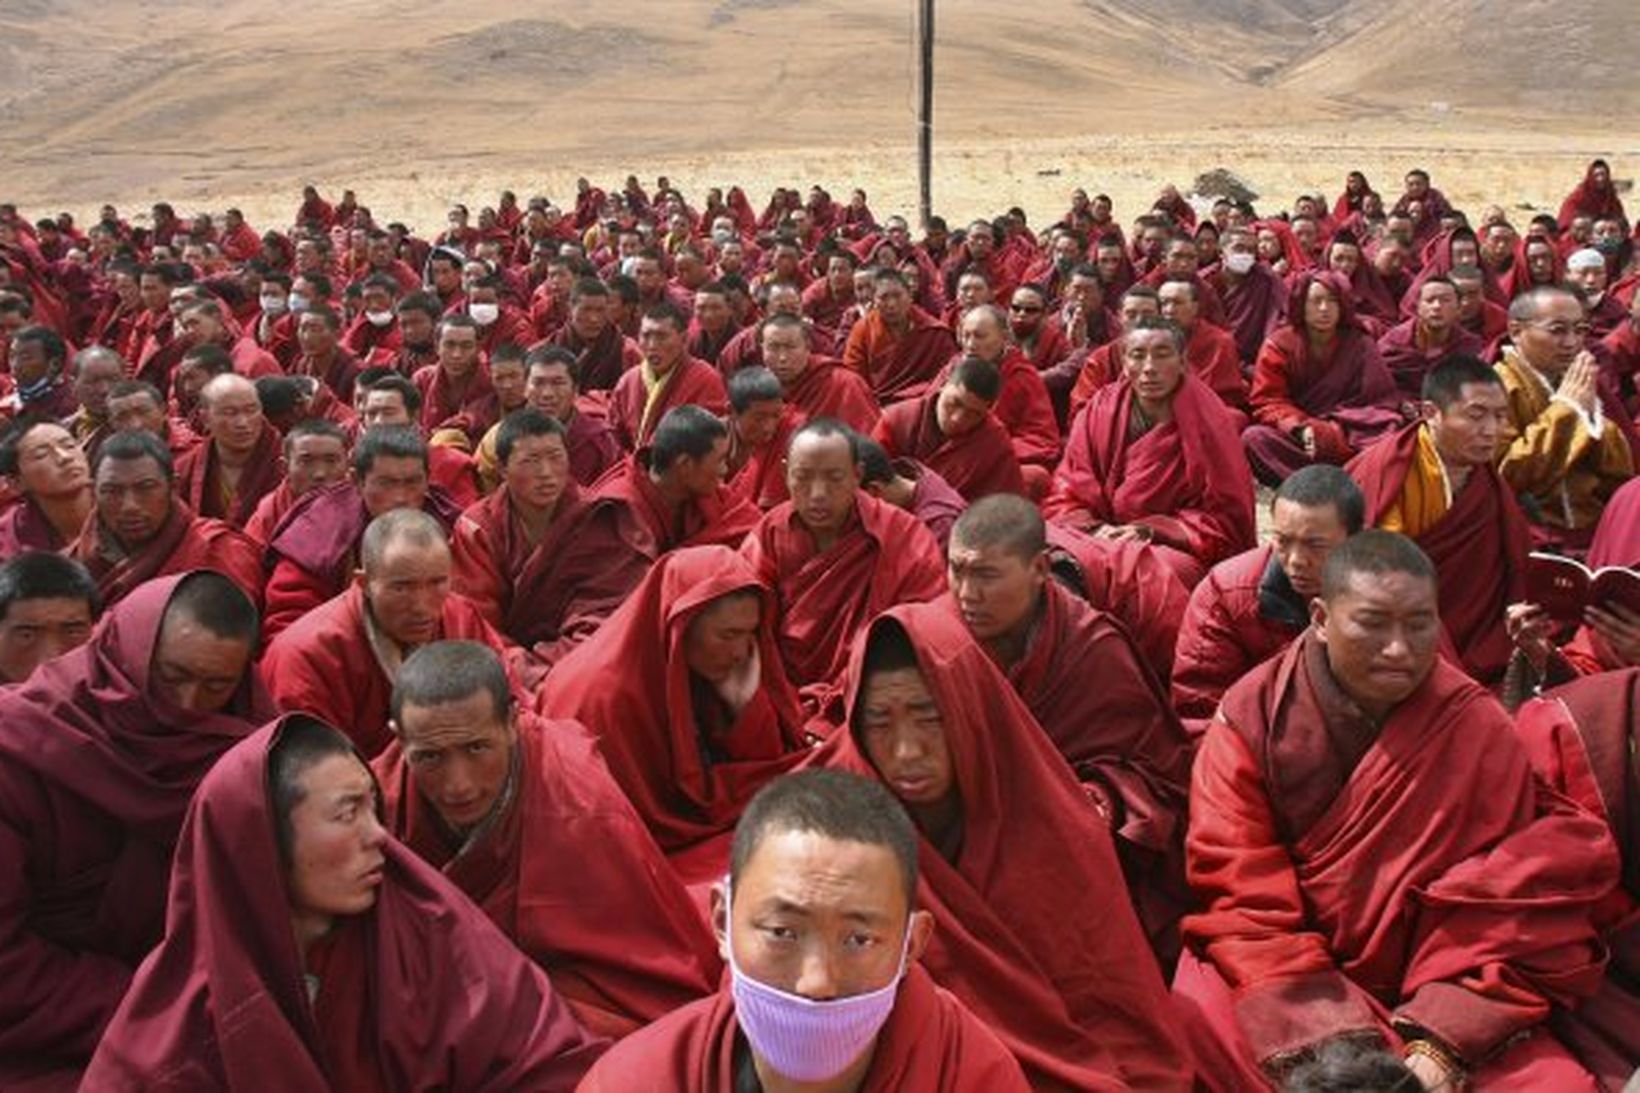 Tíbetskir munkar taka þátt í fjöldabæn til handa fórnarlömbum skjálftans.